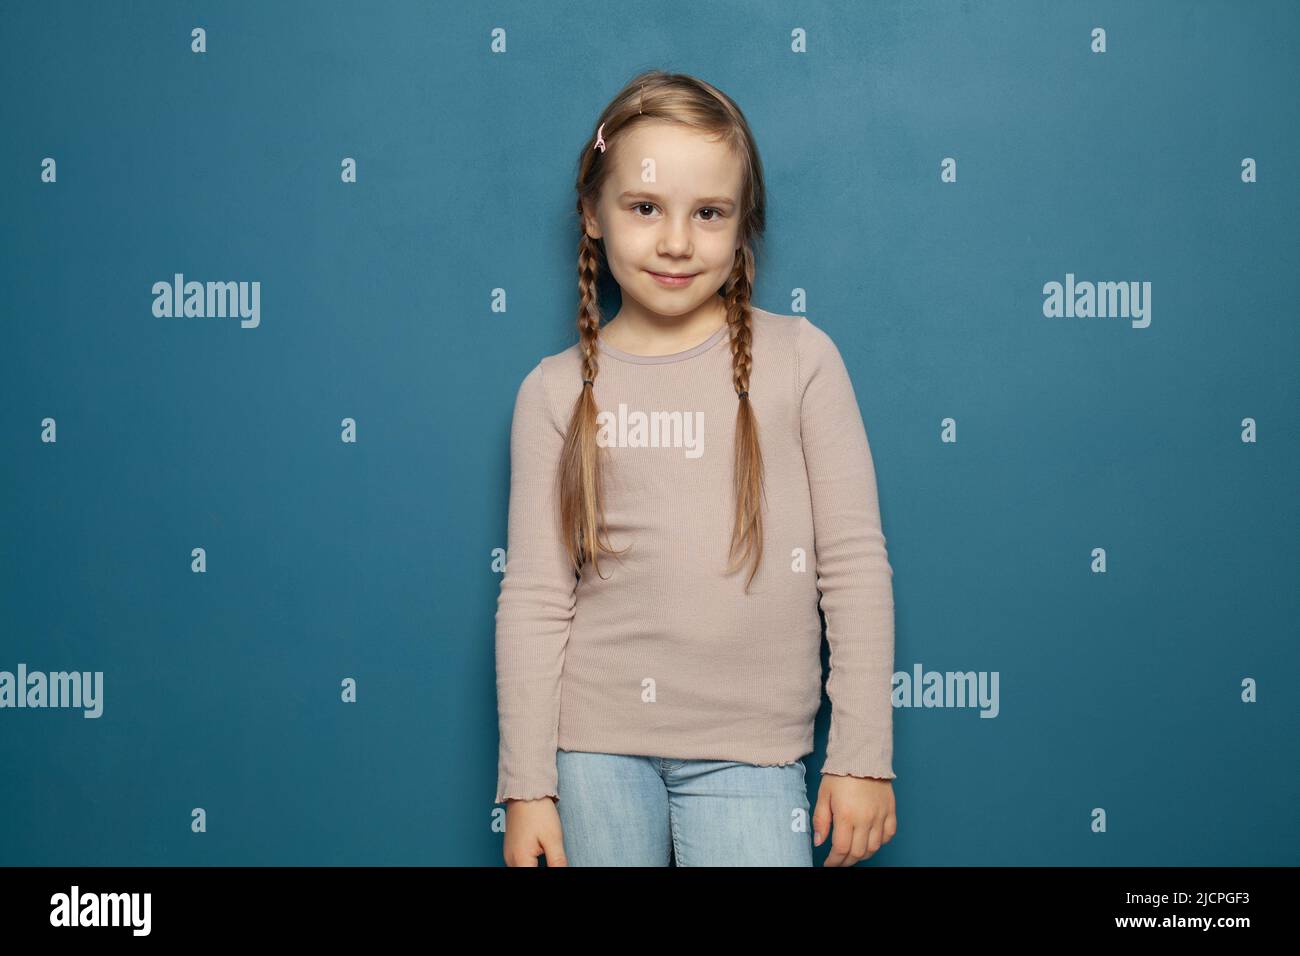 Petit enfant mignon enfant fille de 7-8 ans portant un t-shirt sur fond bleu, enfants portrait studio. Concept de l'enfance. Banque D'Images